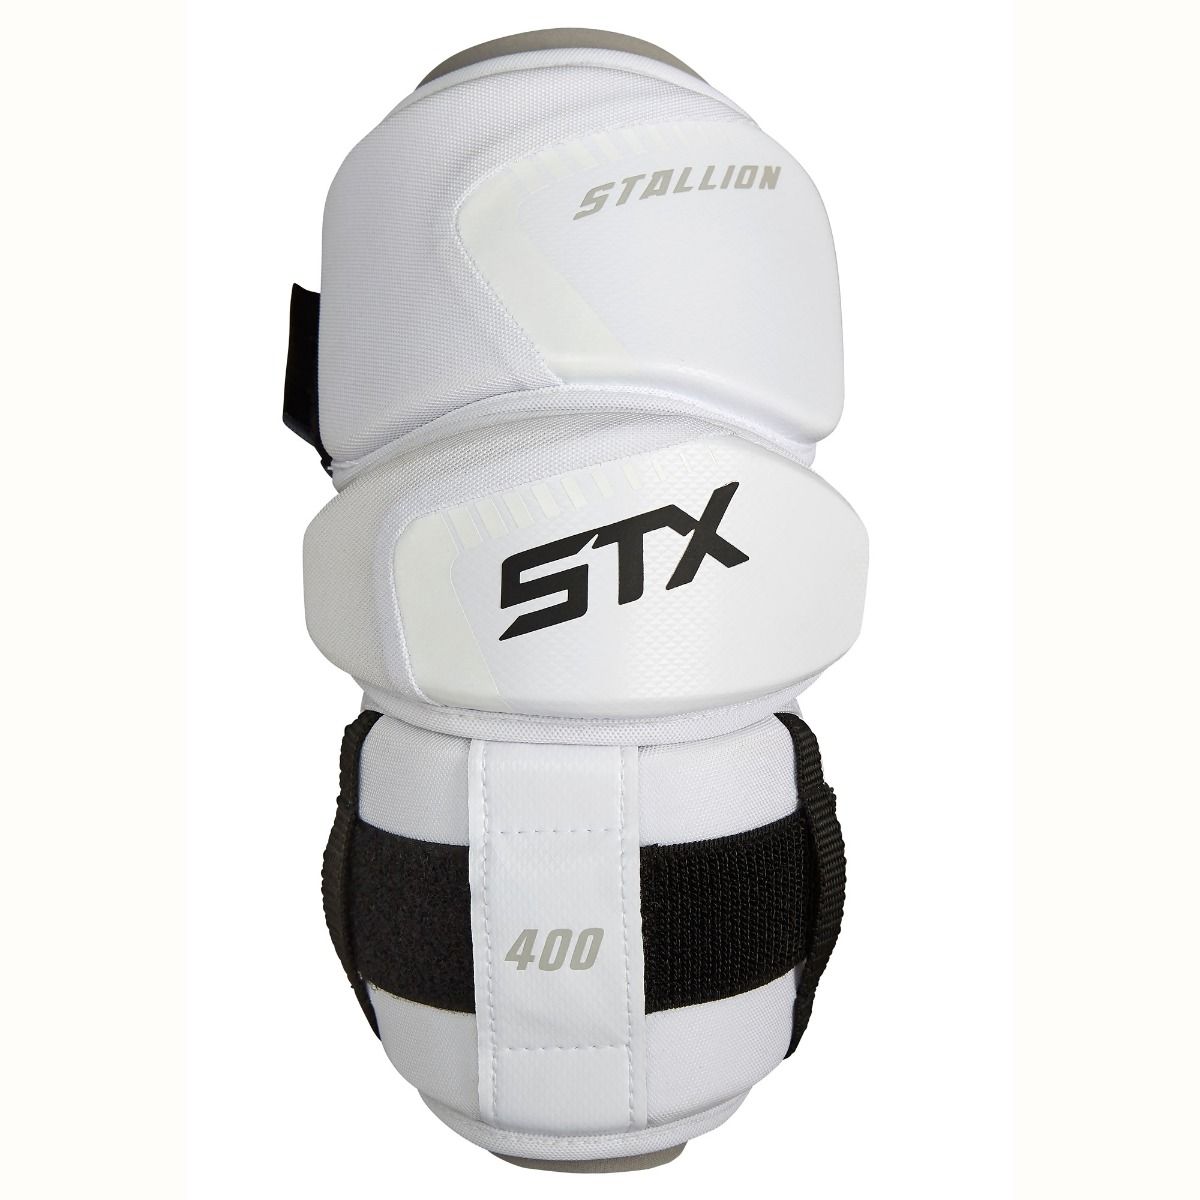 STX Stallion 400 Lacrosse Shoulder Pads Large